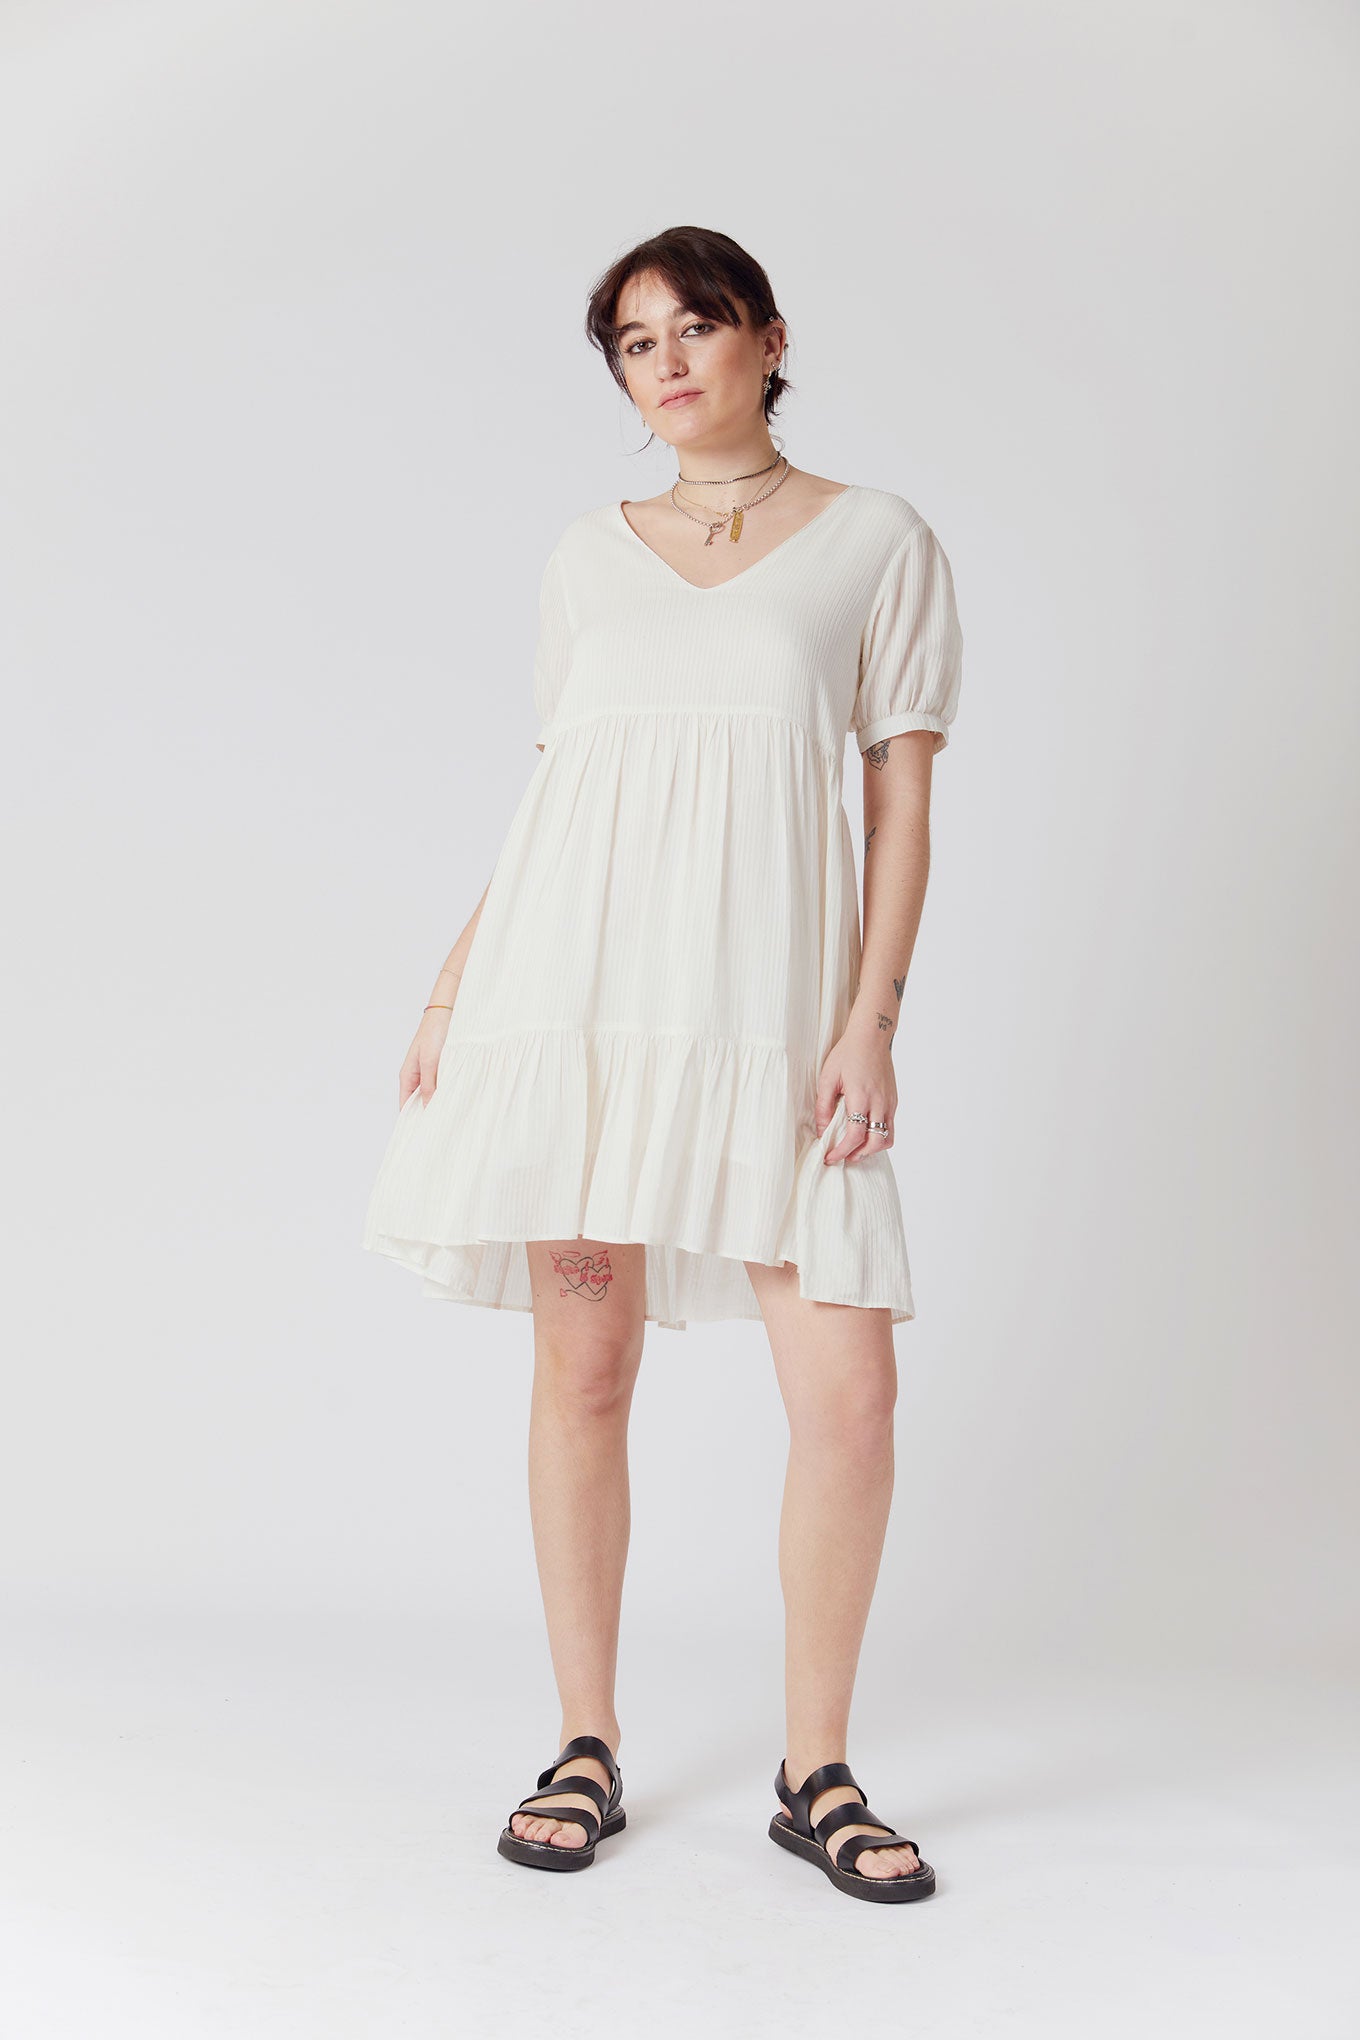 SKY Corn Fabric Mini Dress - Off White, SIZE 3 / UK 12 / EUR 40